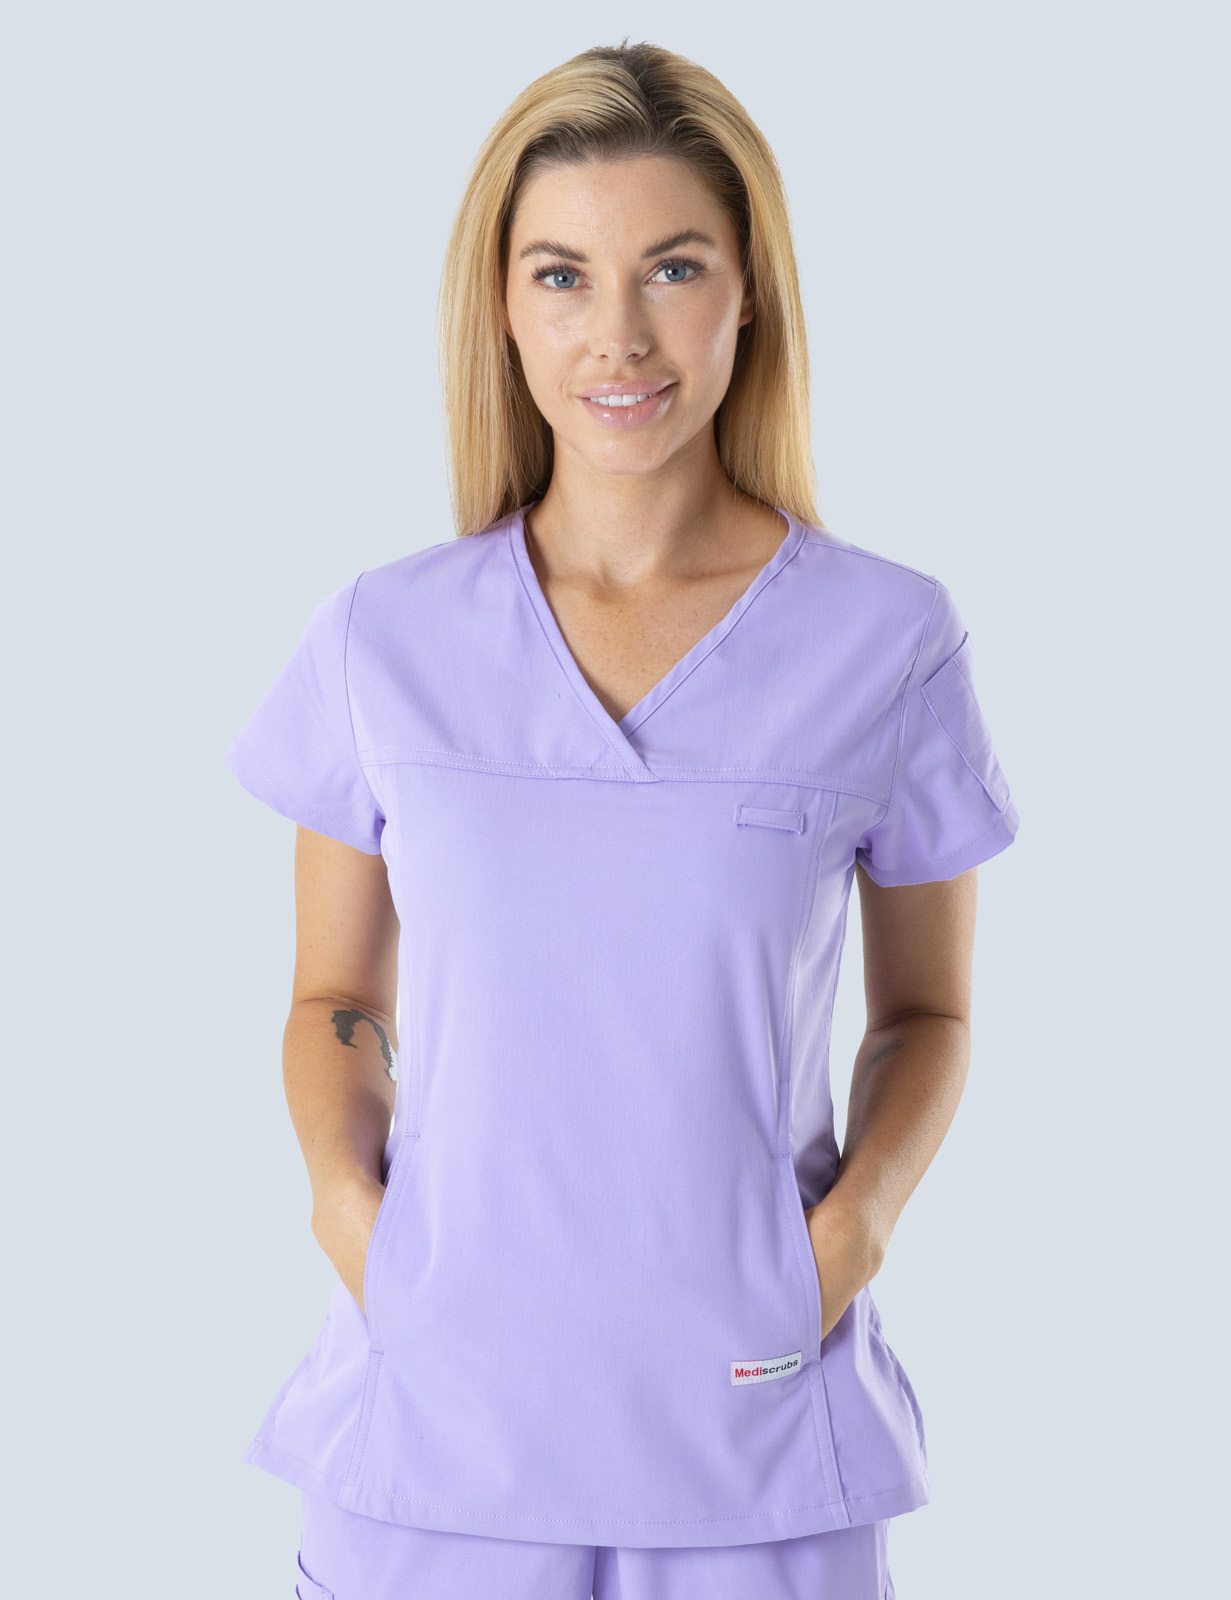 Queensland Children's Hospital Emergency Department Doctor Uniform Top Bundle (Women's Fit Top in Lilac  incl Logos)